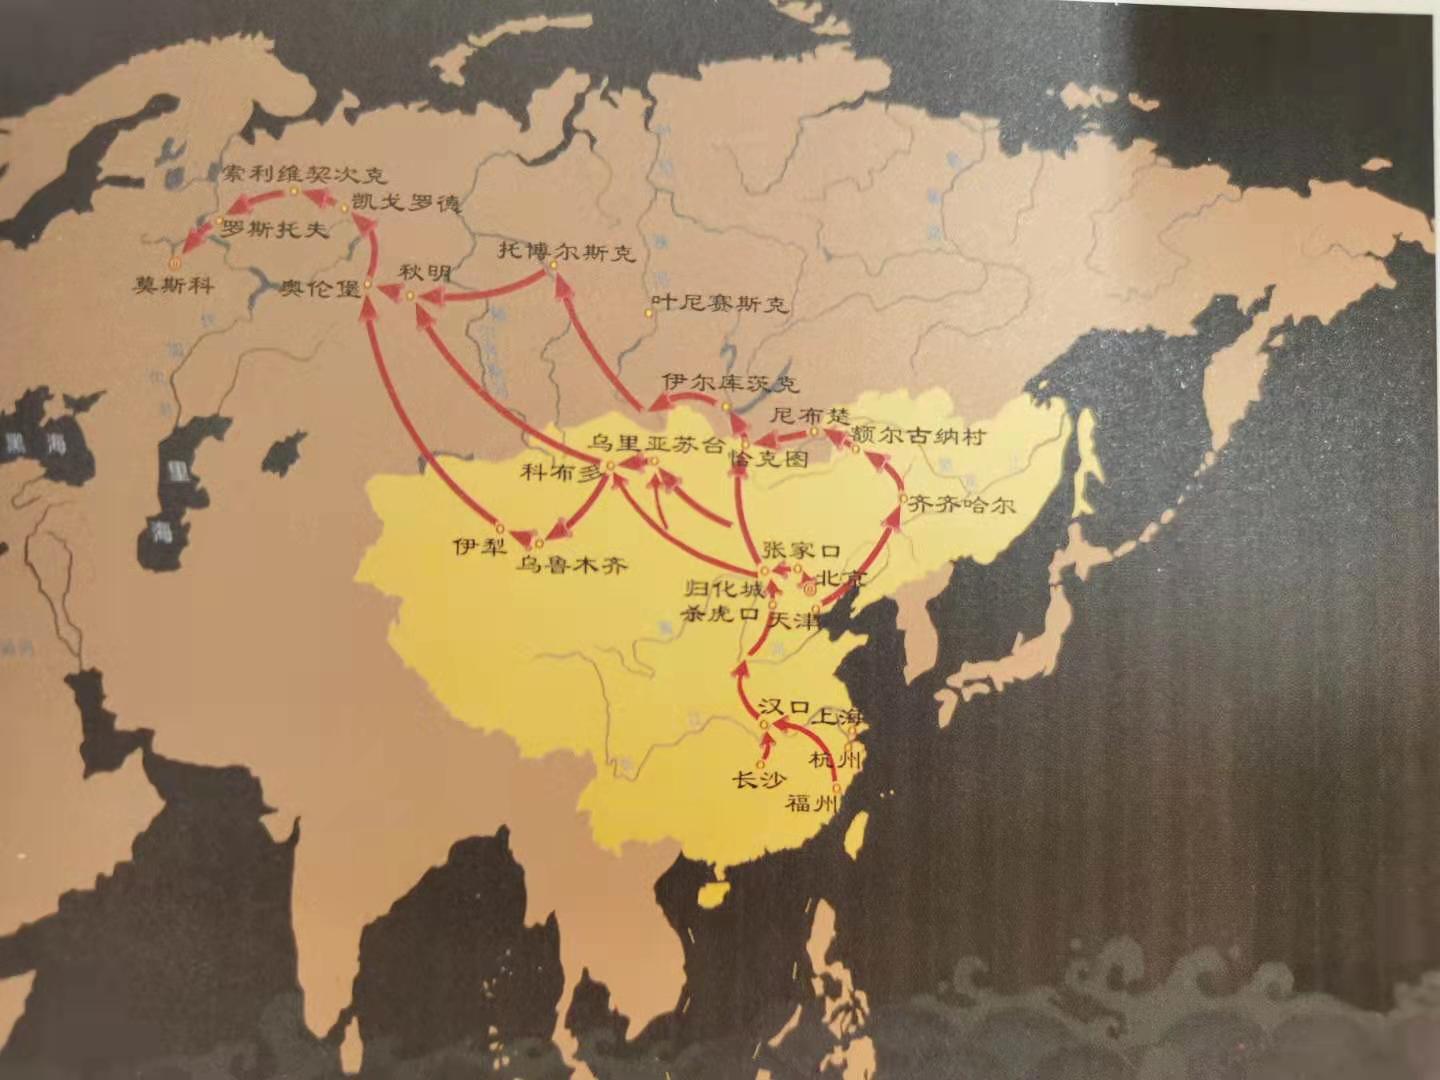 茶叶之路简图晋商对俄贸易路线图了解晋商兴起,发展,衰败的原因